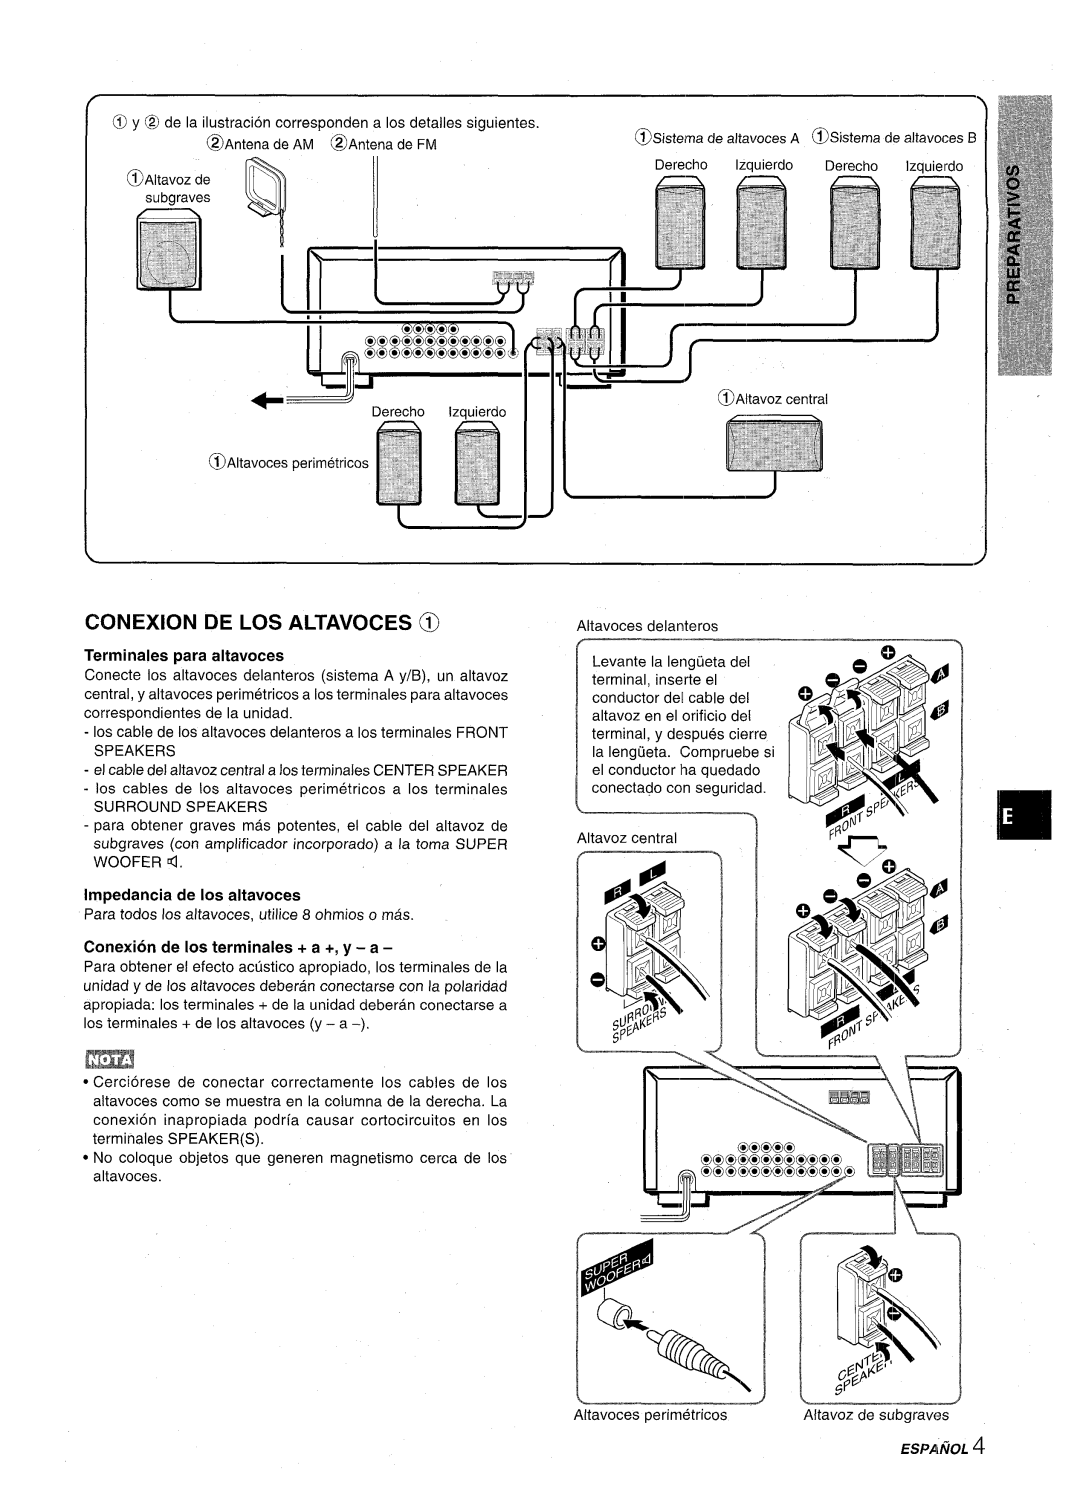 Aiwa AV-D30 manual Ev+22, Conexion De Los Altavoces @, Conexion de Ios terminates + a +, y - a, rff‘\6’$‘ ‘, Espainol 